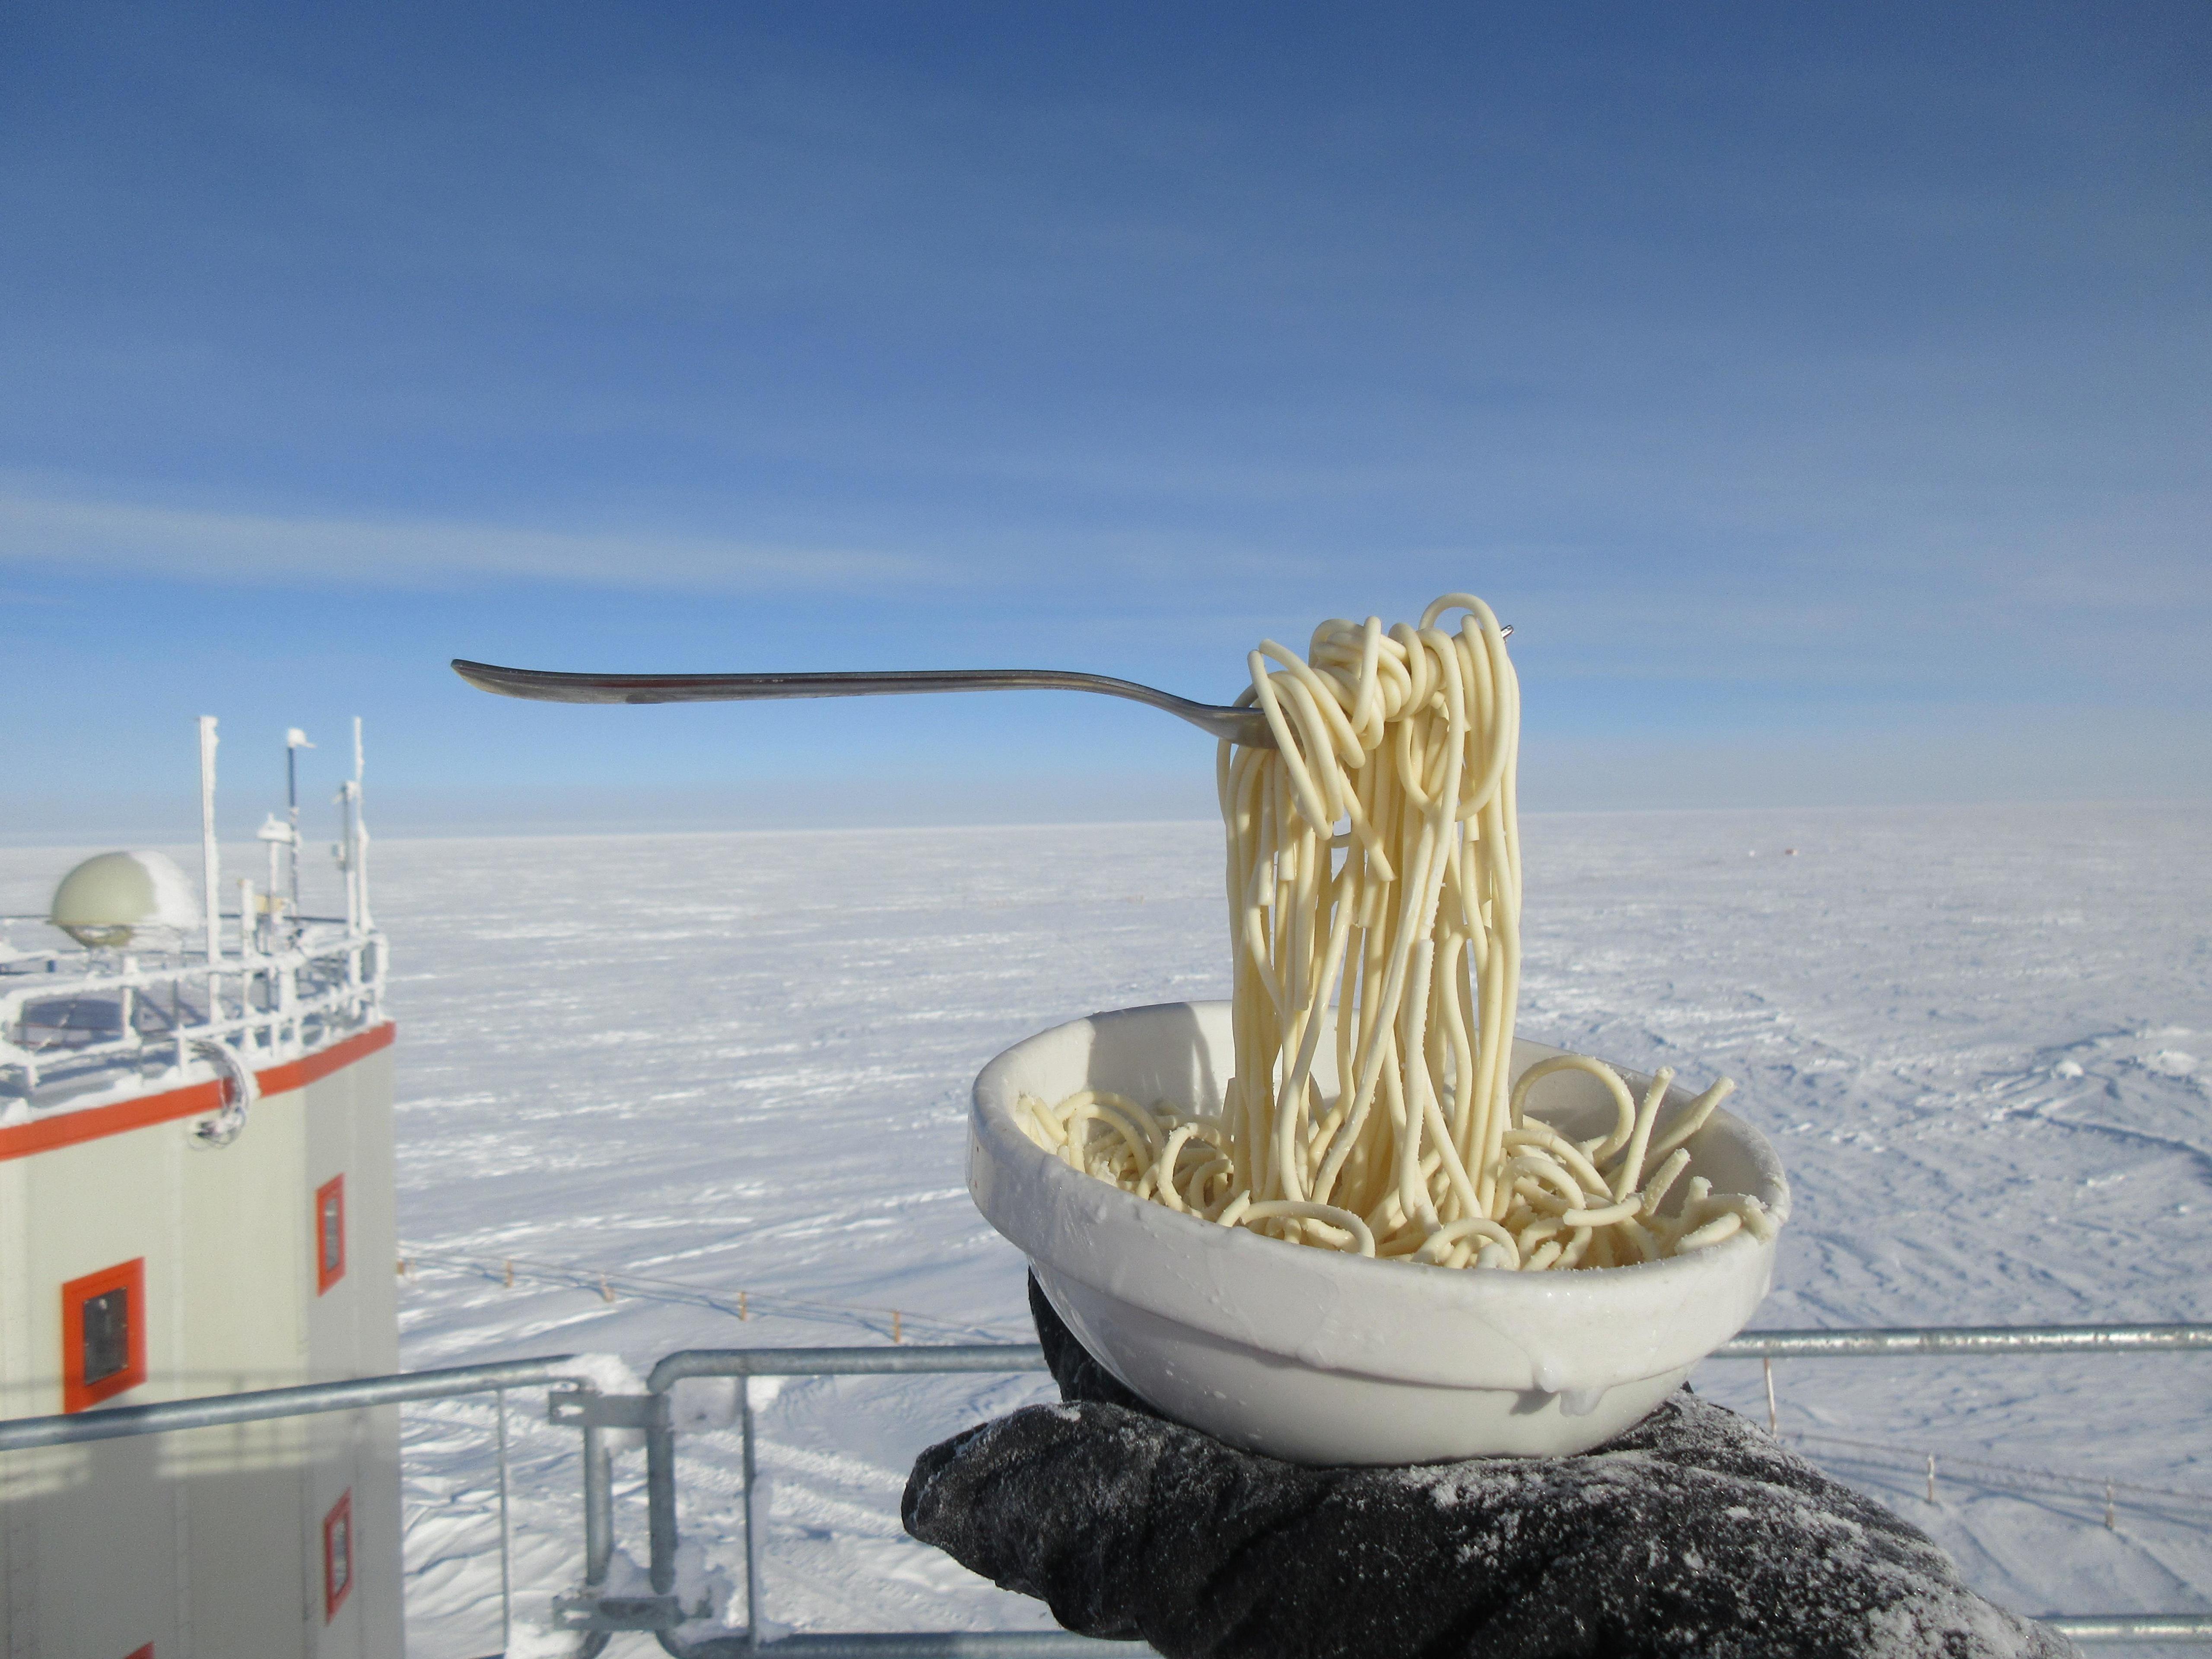 Лапша в холодильнике. Конкордия (антарктическая станция). Конкордия Антарктида. Concordia Антарктида. Лапша на морозе.